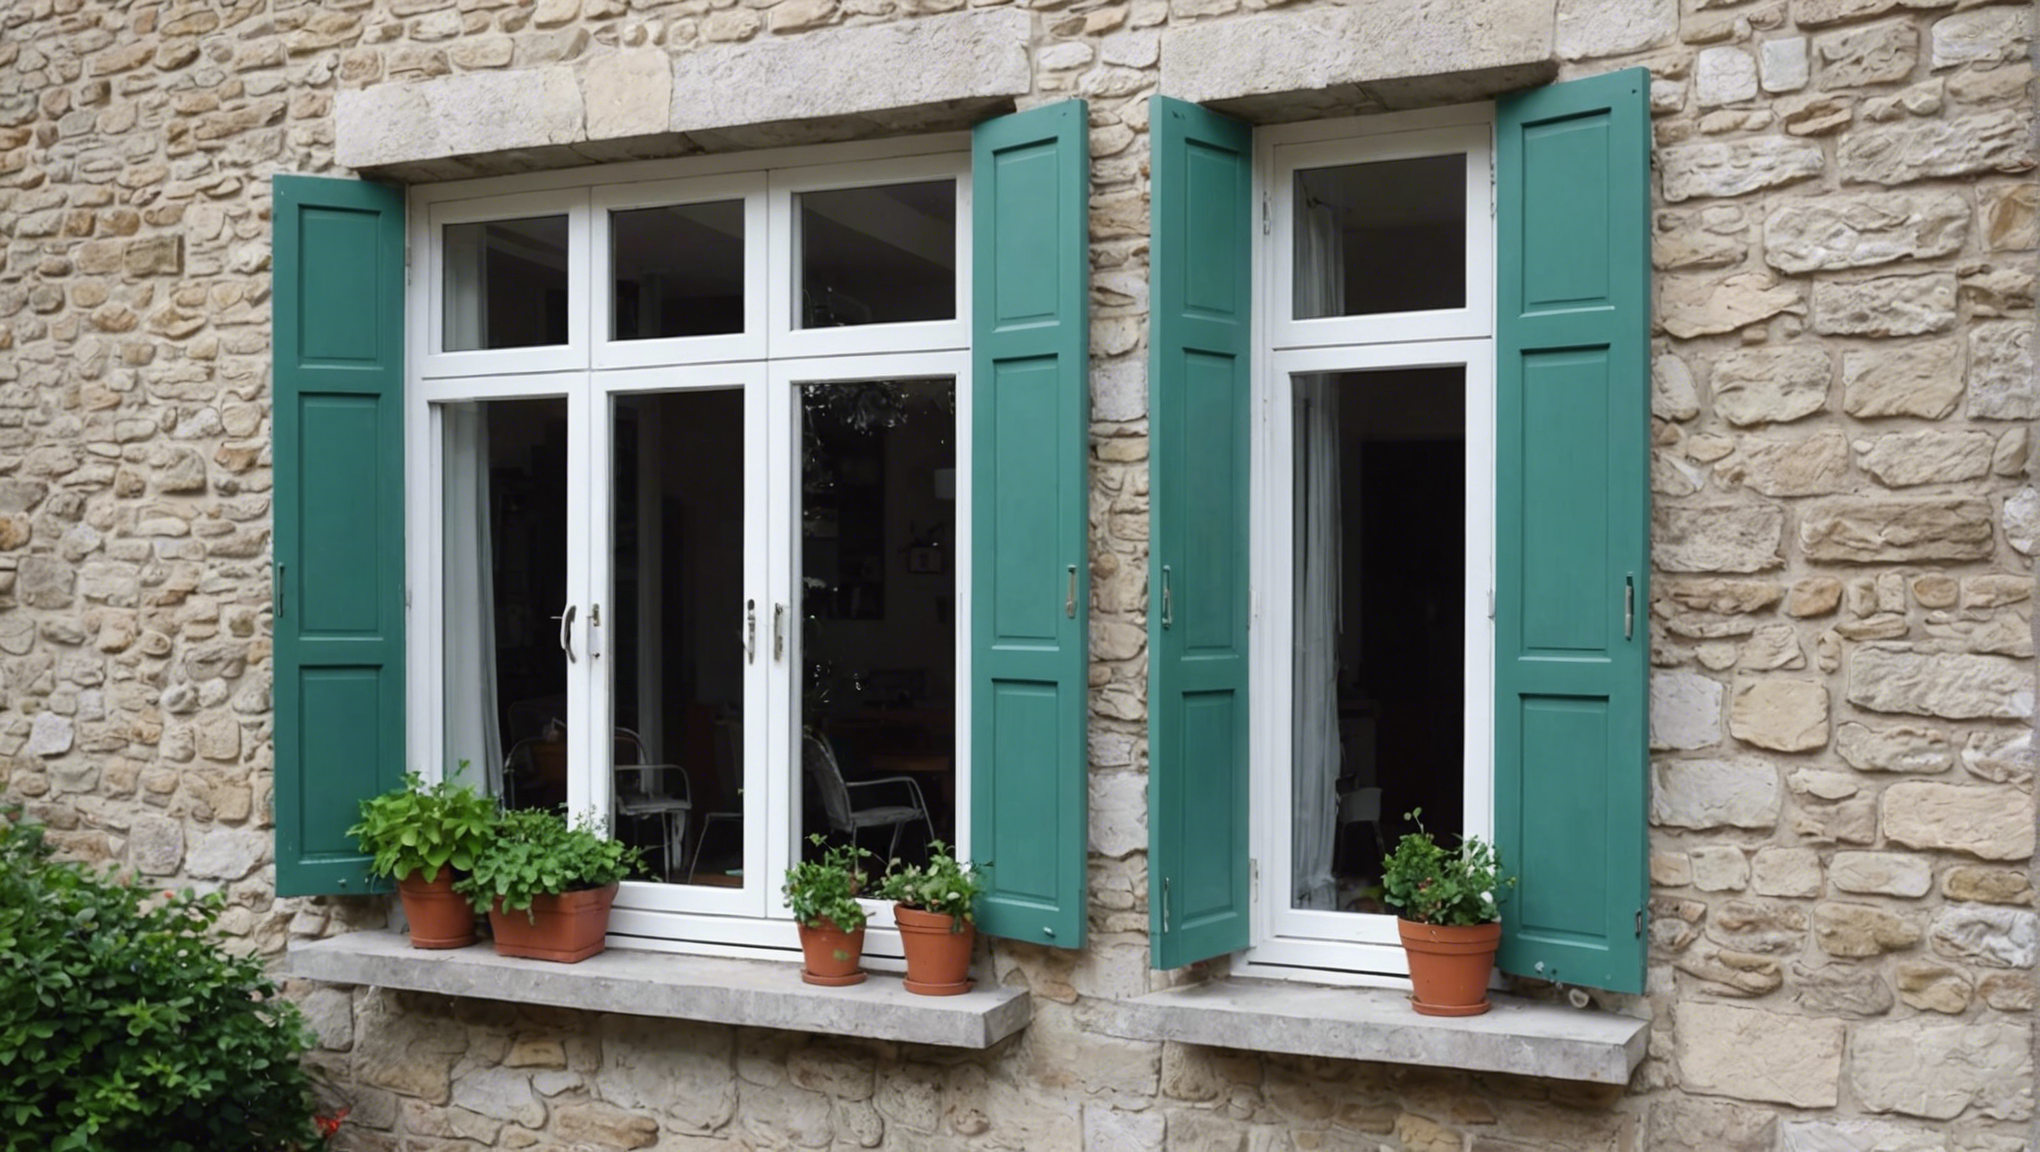 découvrez les avantages des fenêtres en double vitrage et les raisons pour lesquelles vous devriez opter pour ce choix innovant pour votre habitat.